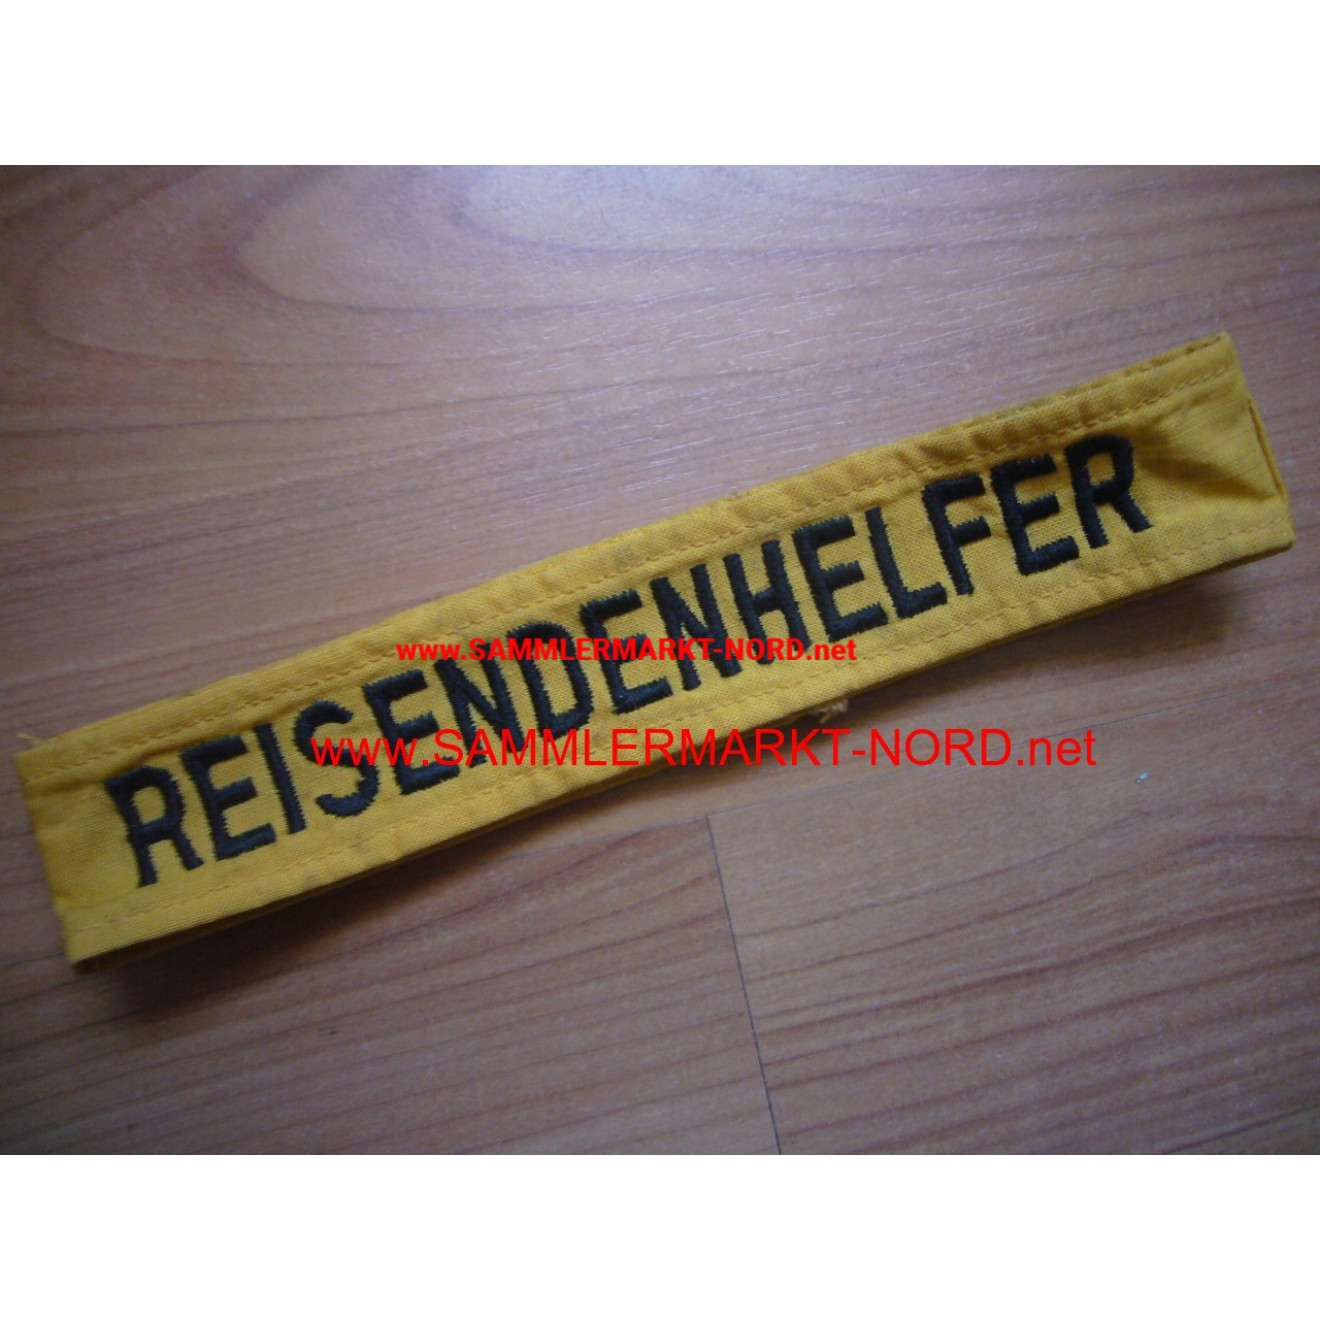 Cuff title "Traveler Helper" - German Federal Railroad (?)